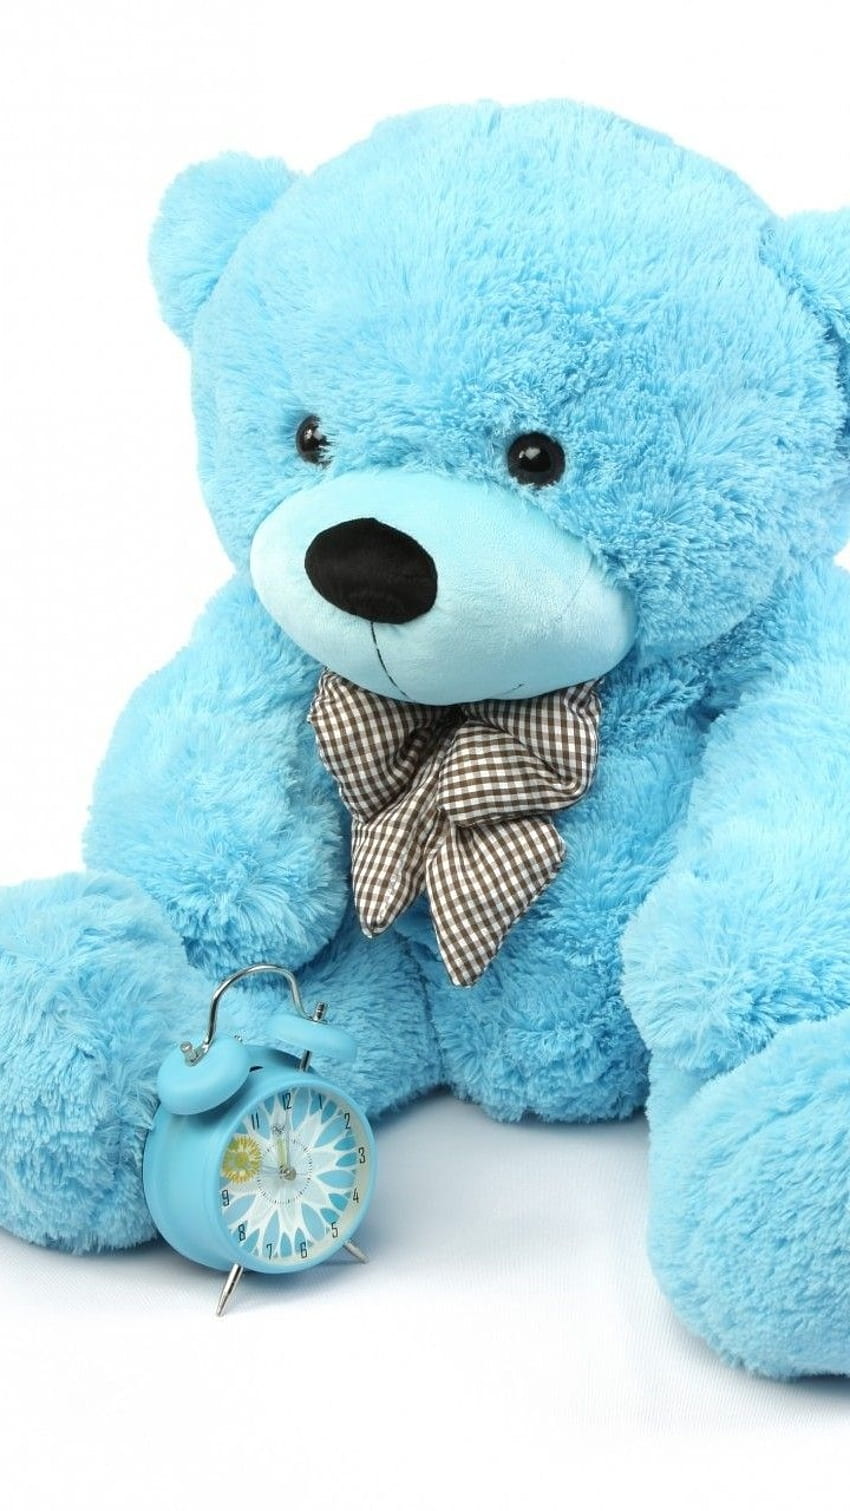 Cute Teddy Bear Aesthetic Wallpapers - Top Những Hình Ảnh Đẹp